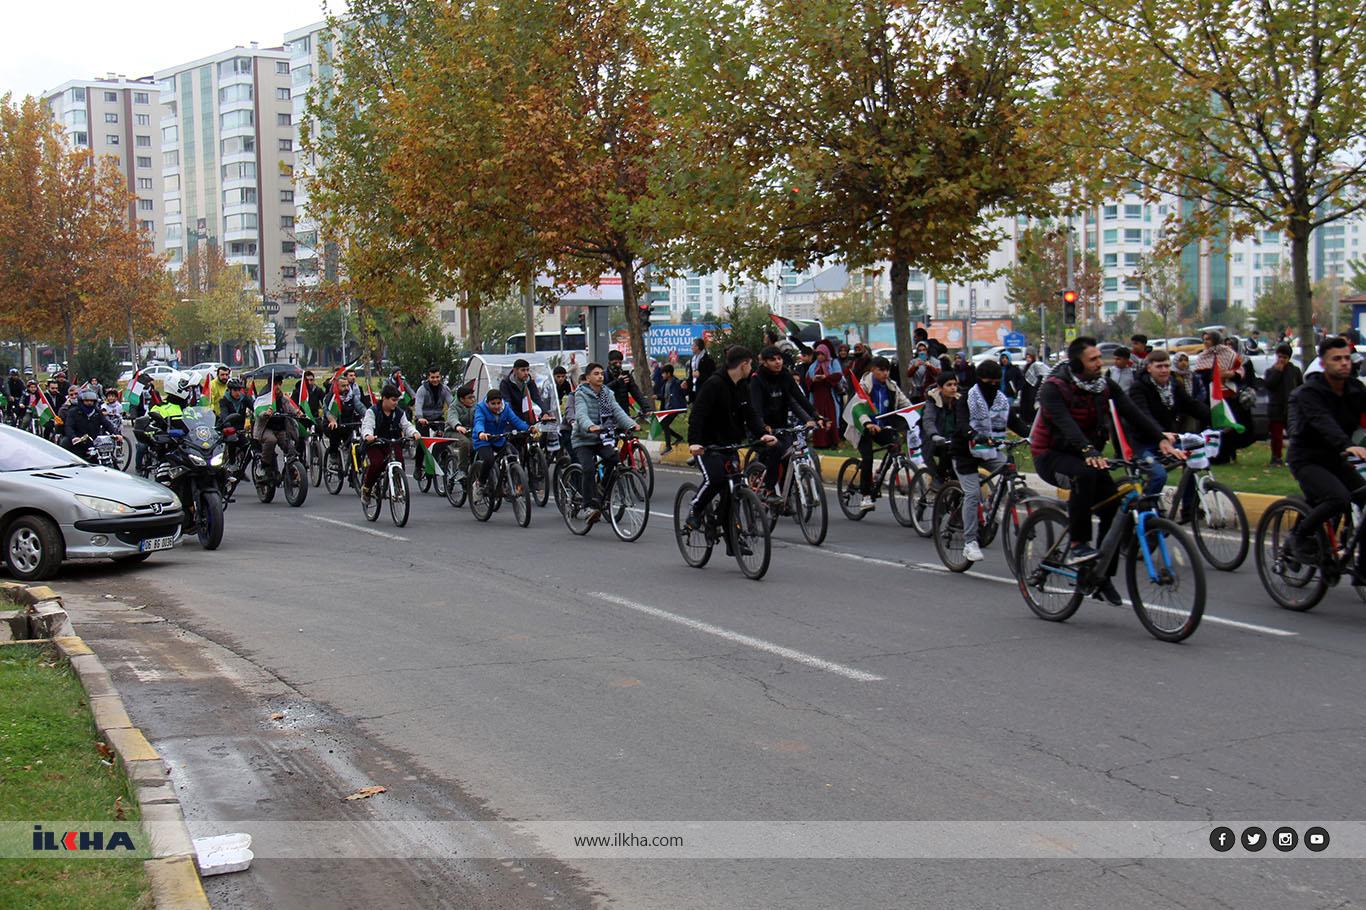 Diyarbakırda Pedallerimizi Gazzeye Çeviriyoruz sloganıyla etkinlik düzenlendi